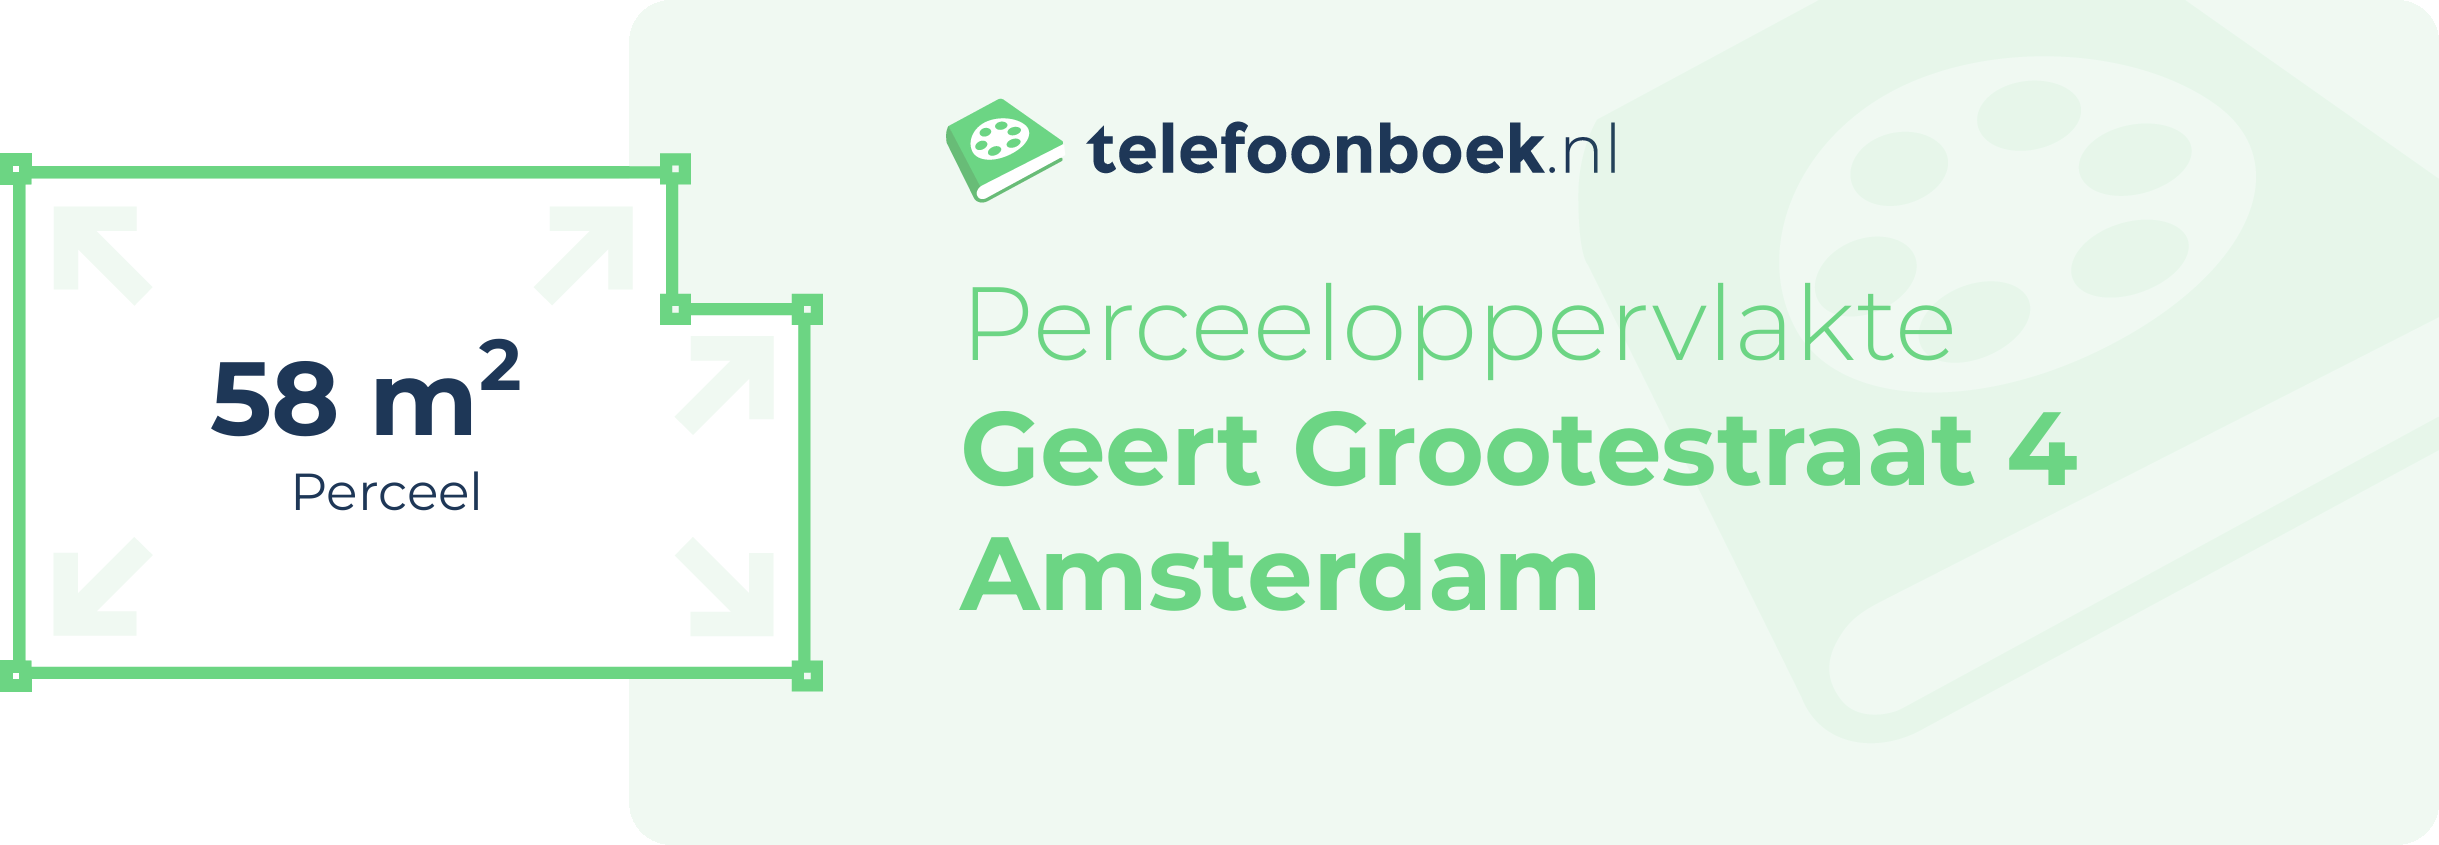 Perceeloppervlakte Geert Grootestraat 4 Amsterdam